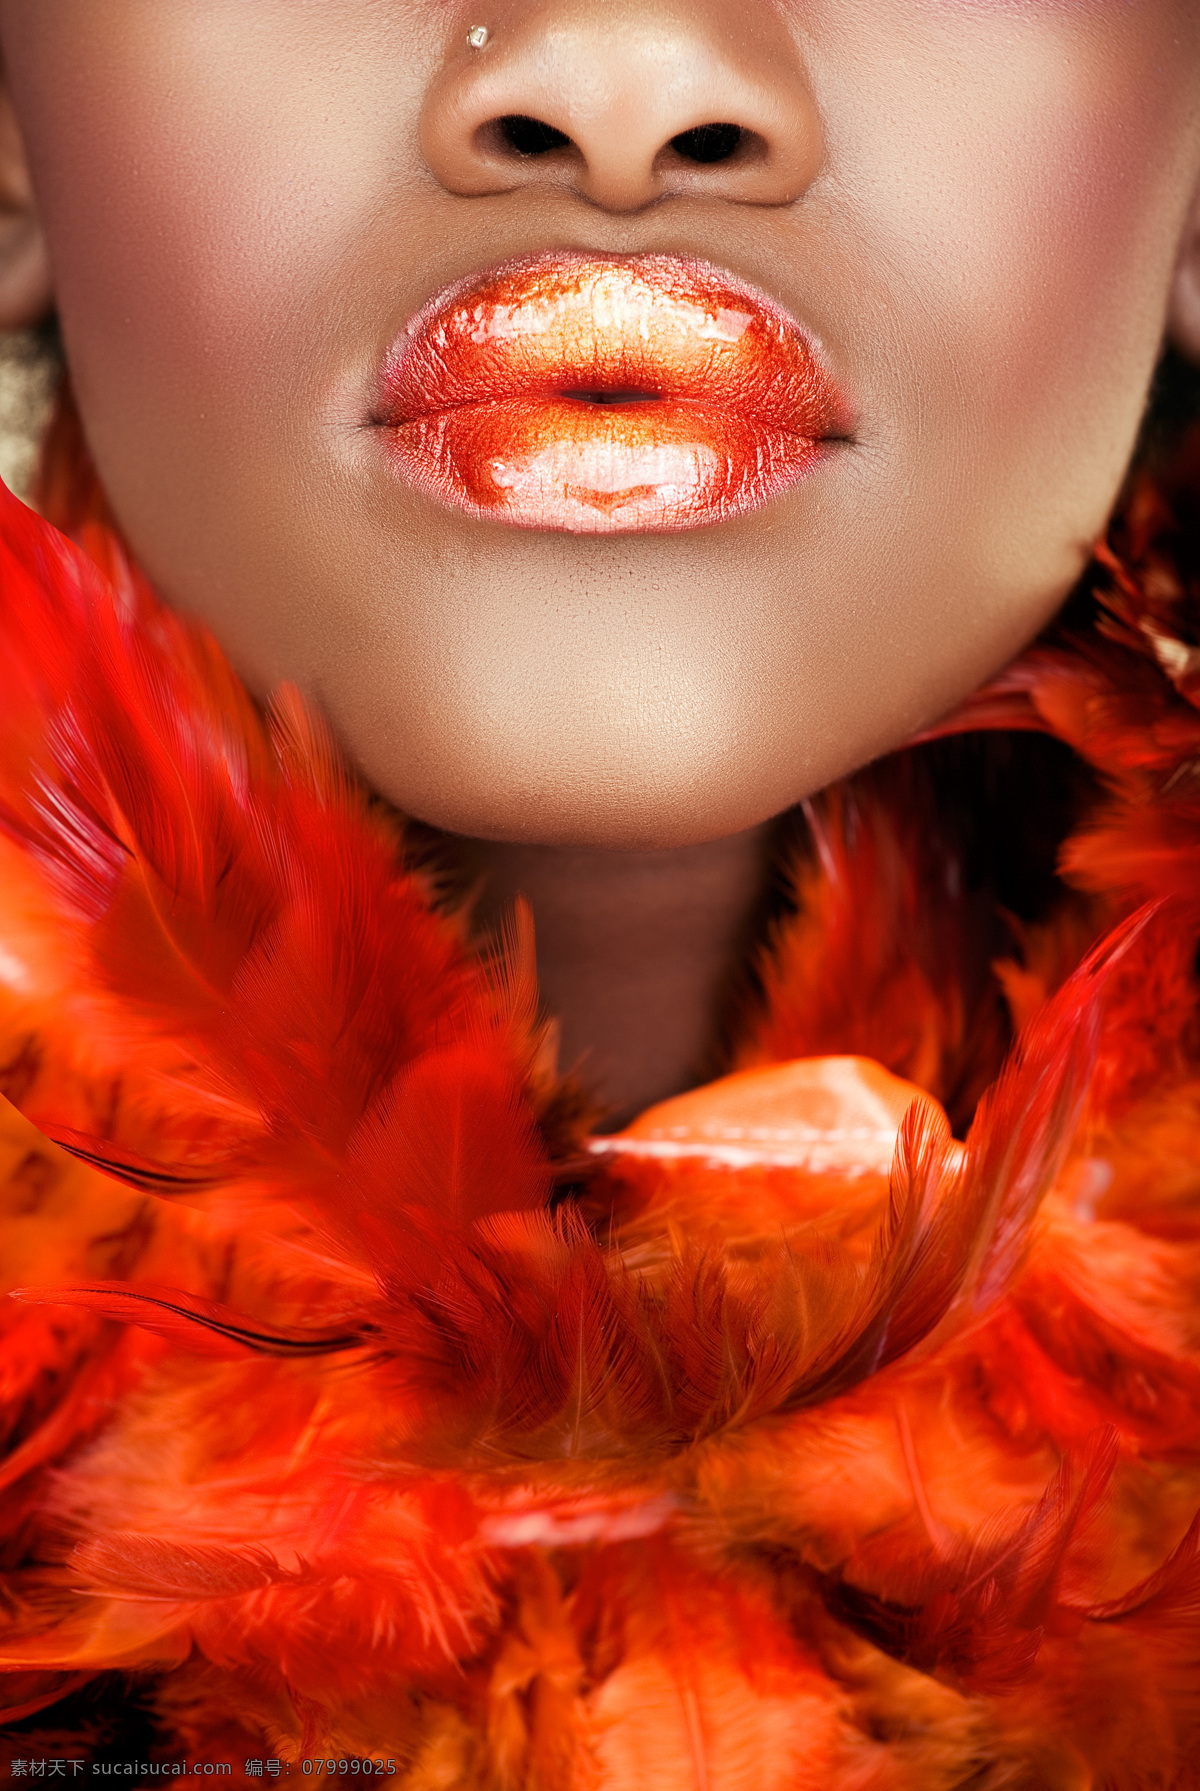 橘 色 羽毛 美女 脸部 橘色羽毛 美女脸部 人物 外国人 美女图片 人物图片